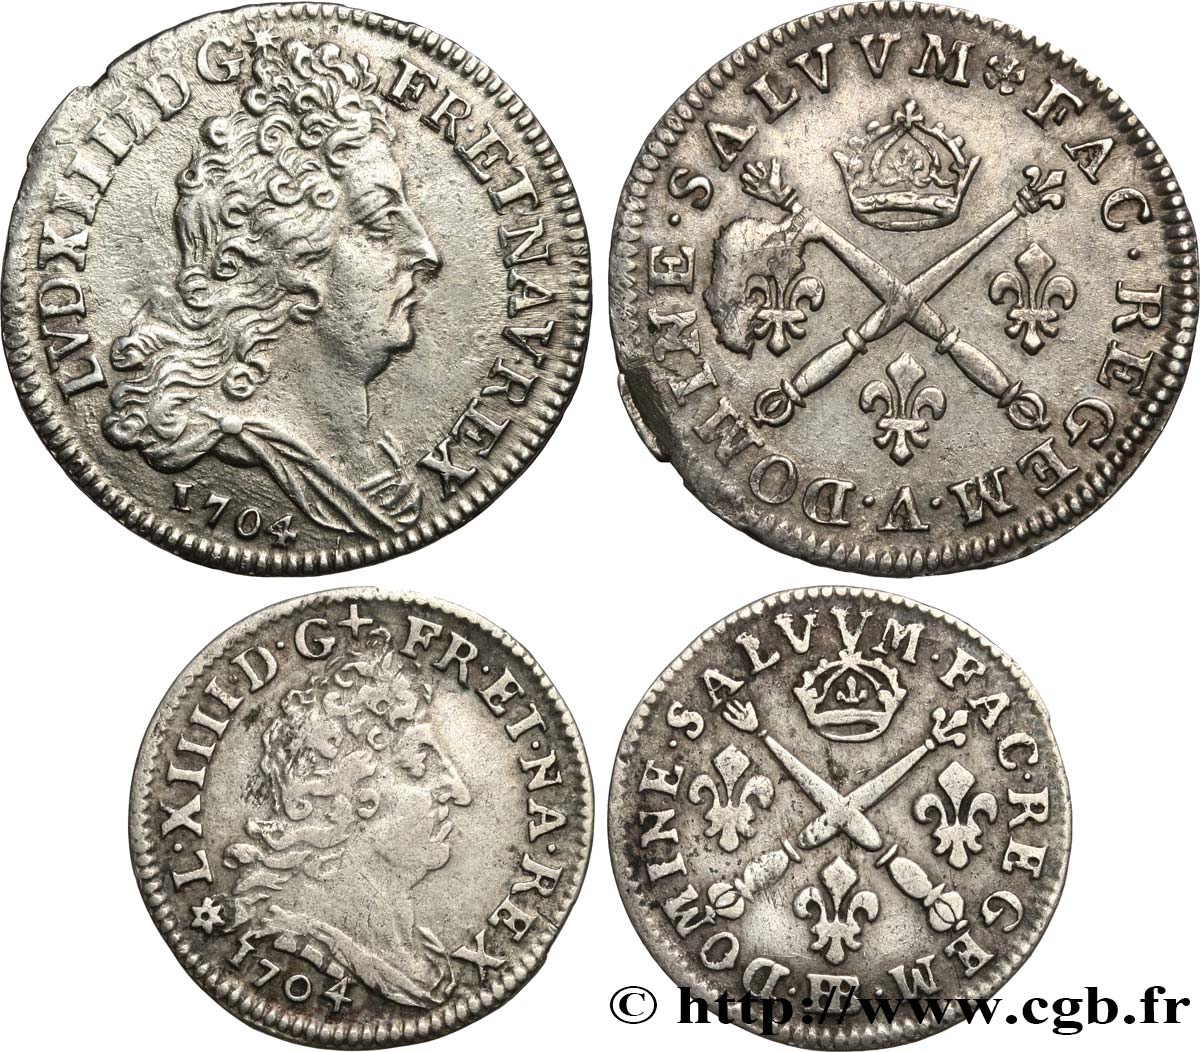 LOUIS XIV LE GRAND OU LE ROI SOLEIL Lot de 2 monnaies royales en argent 1704 Ateliers divers TTB